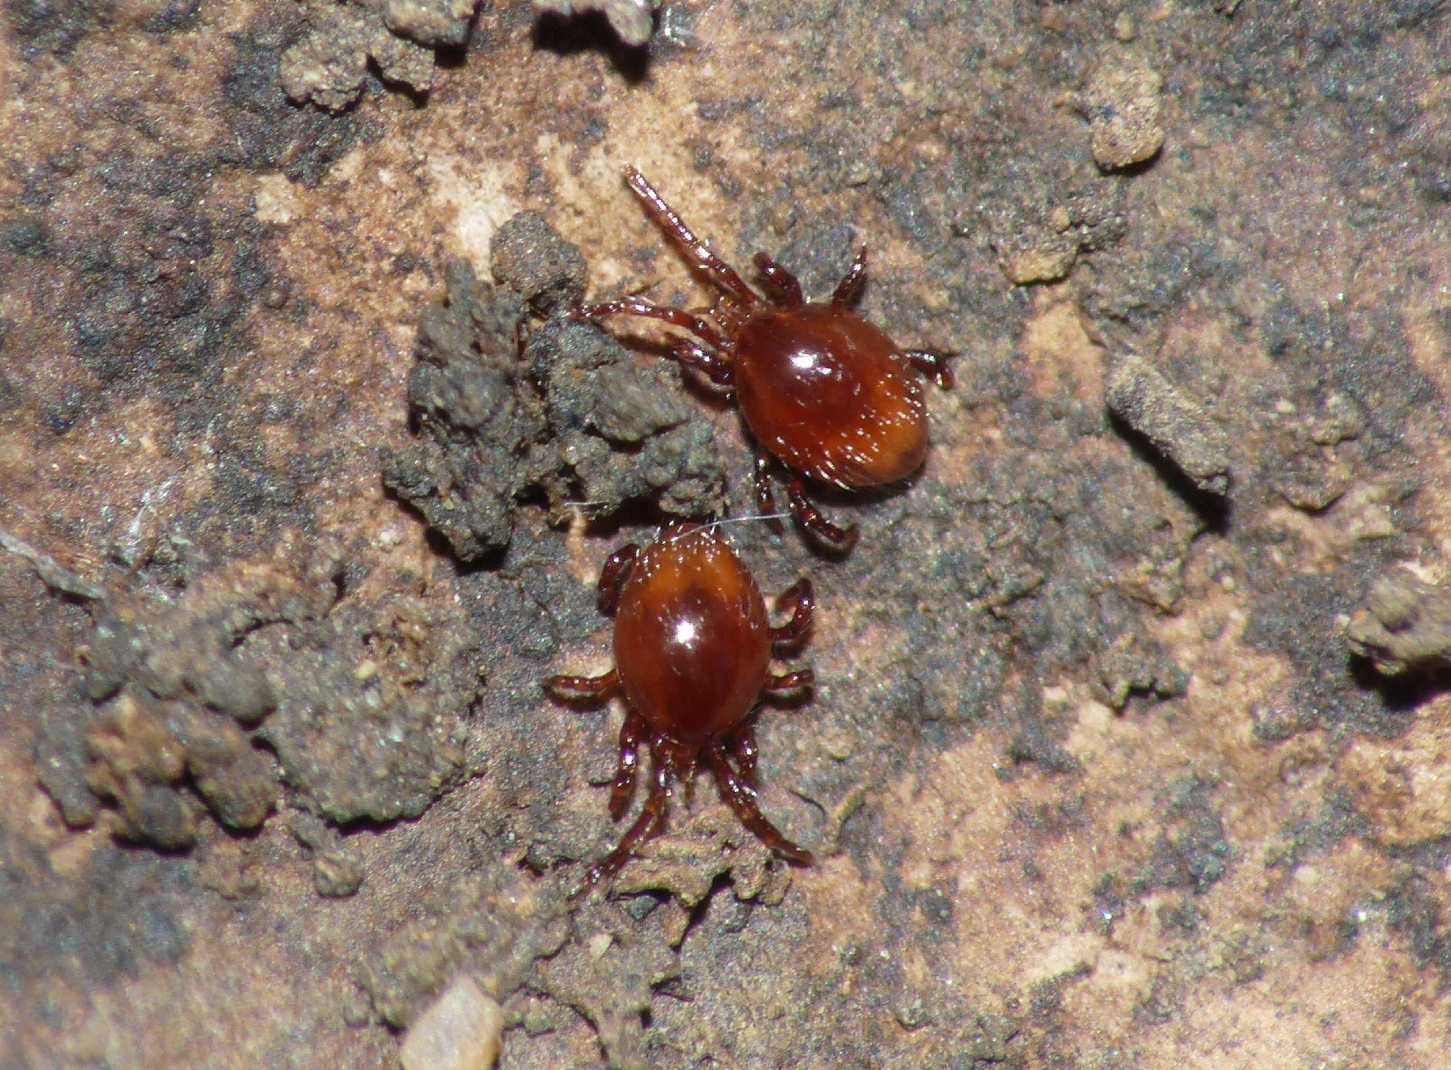 Ospiti delle formiche (galleria fotografica)